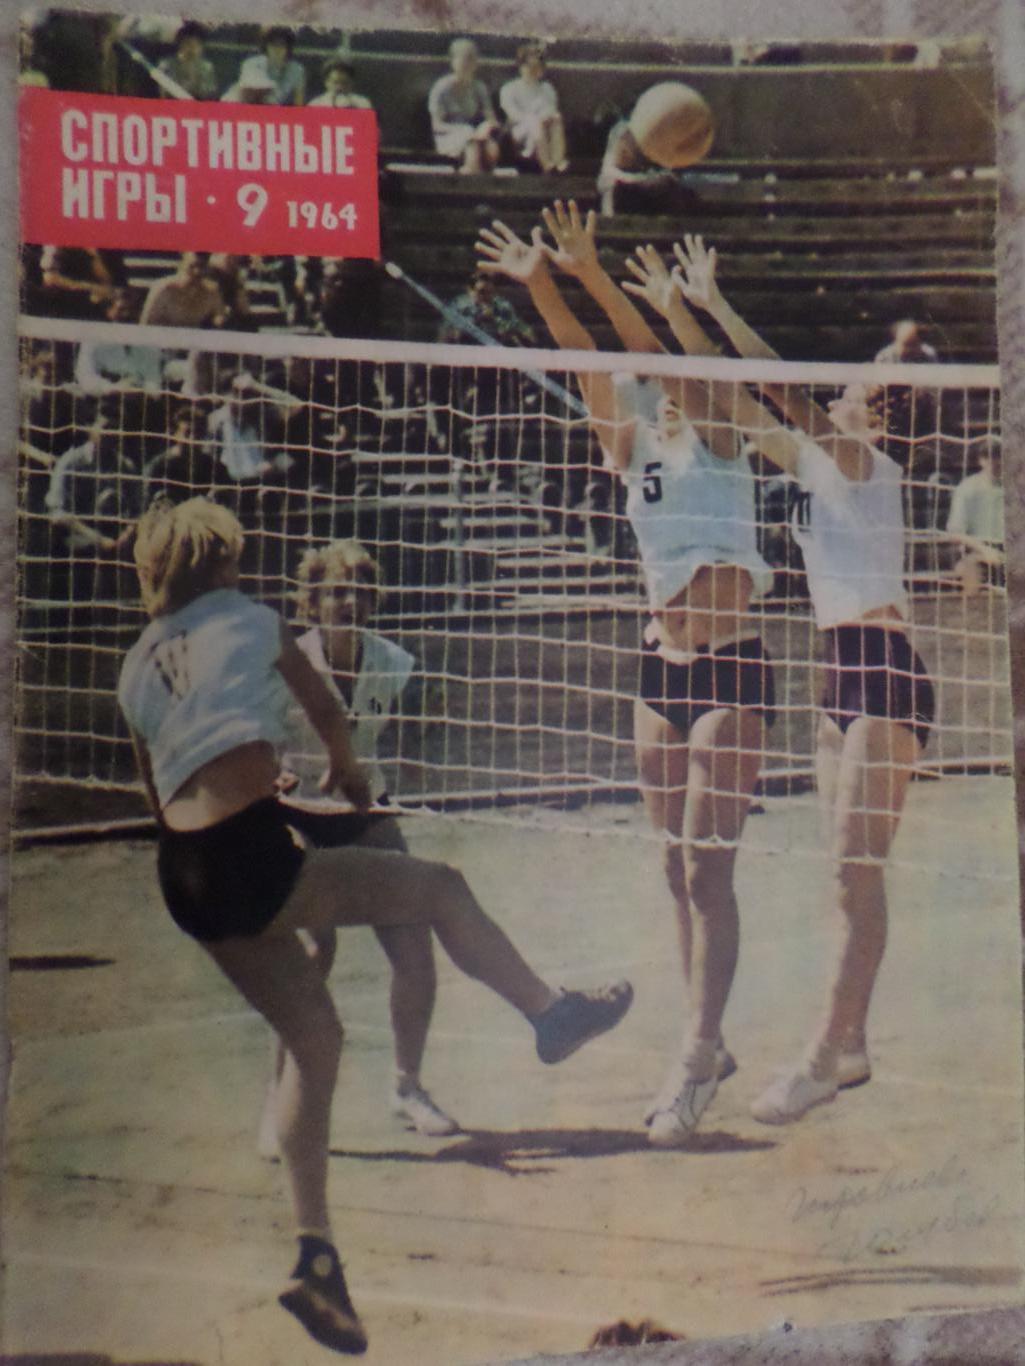 журнал Спортивные игры номер 9 1964 г